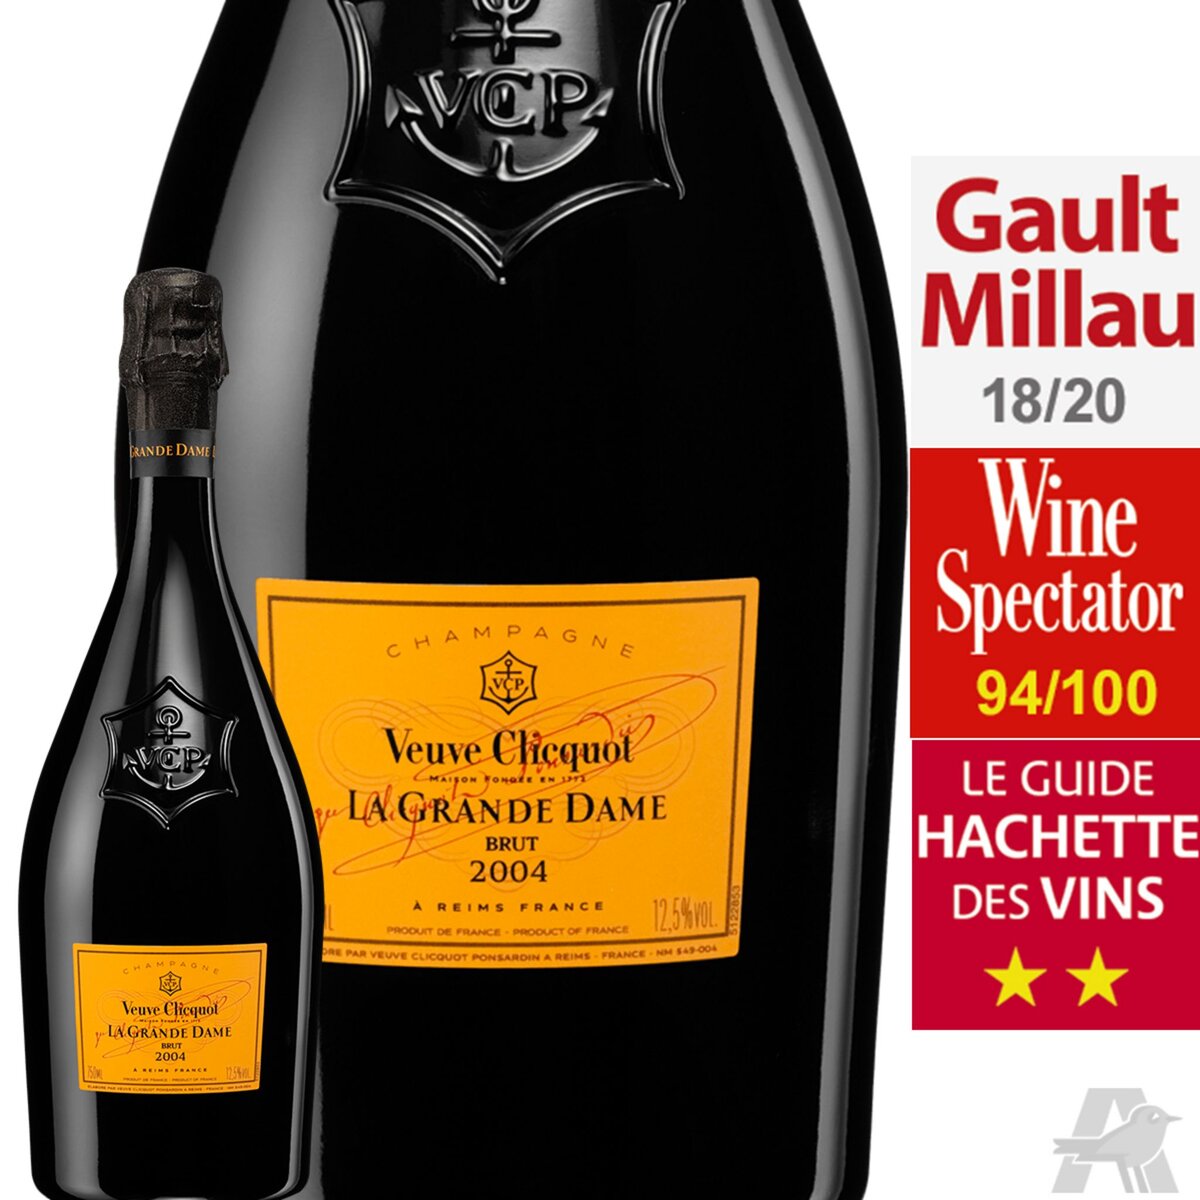 Veuve Clicquot Champagne Veuve Clicquot La Grande Dame Champagne 2004